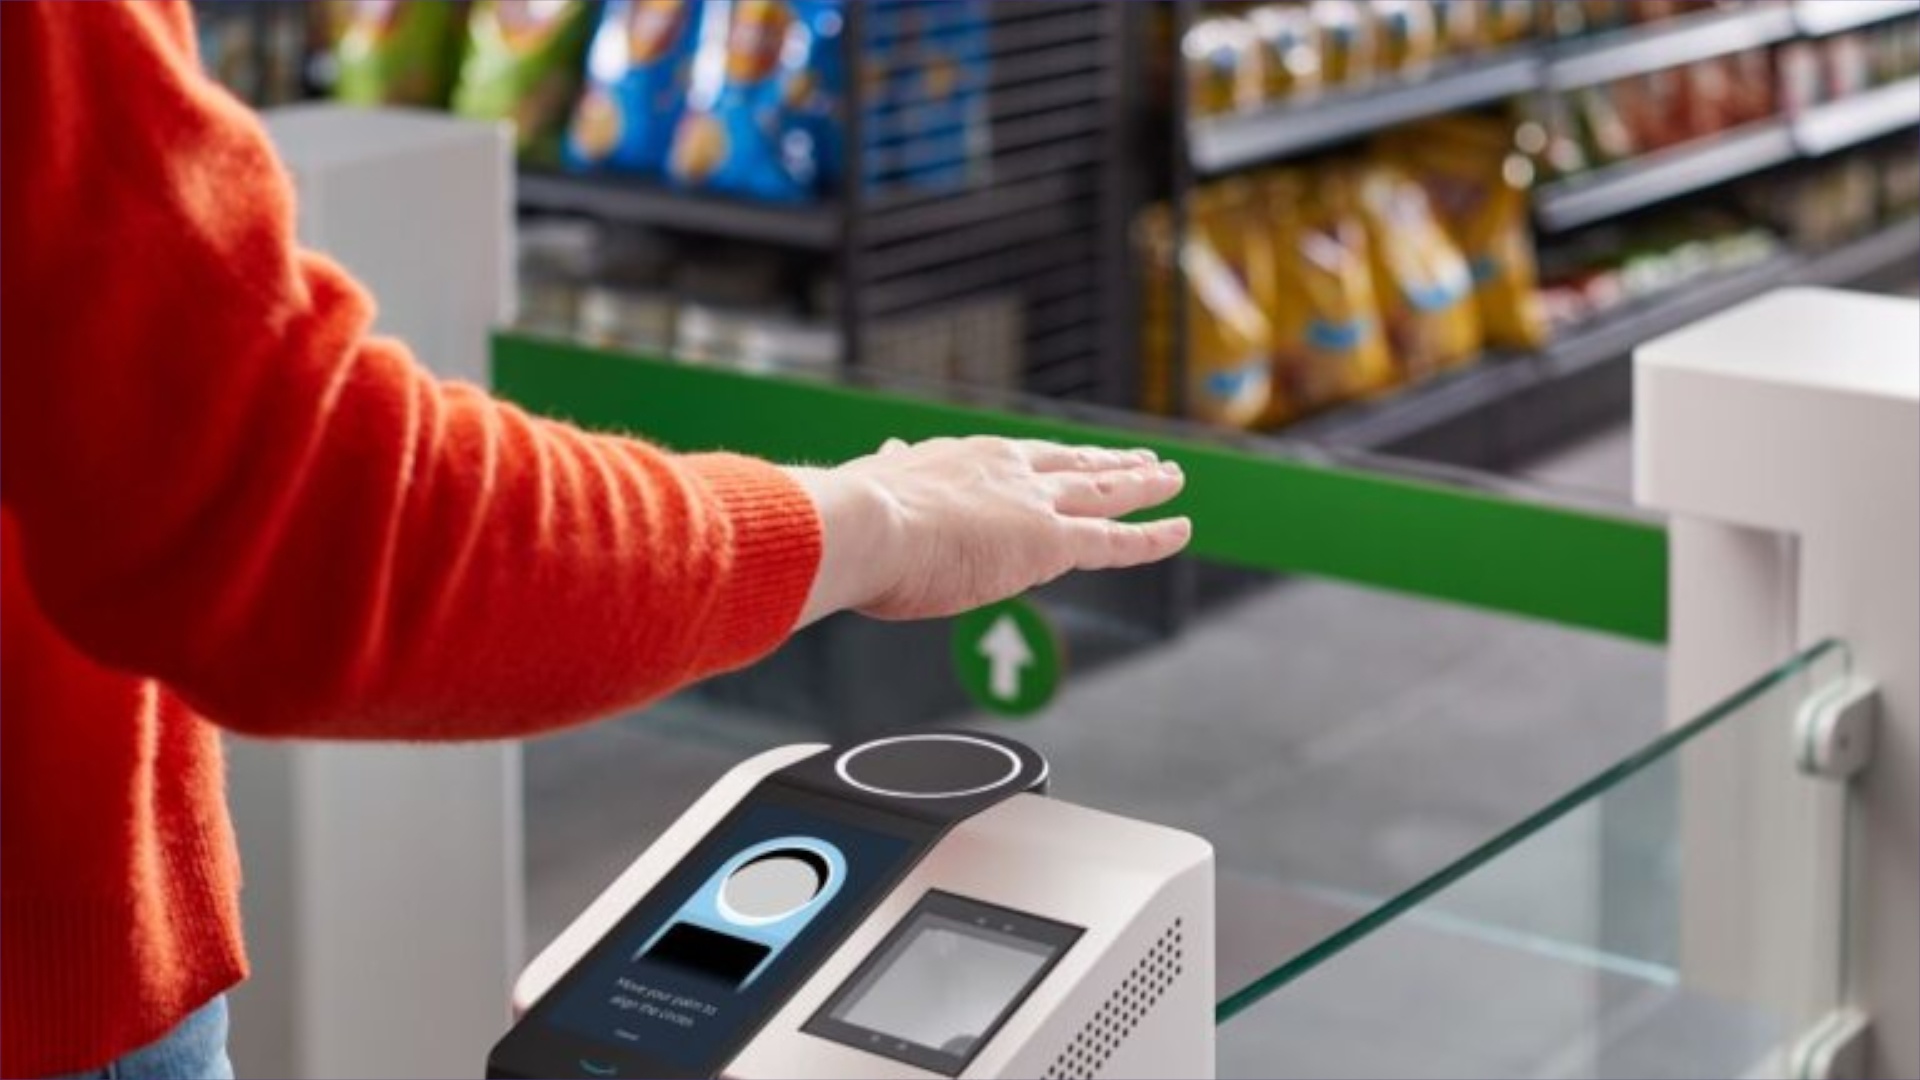 Eure Hand könnte bald reichen, um im Supermarkt zu bezahlen